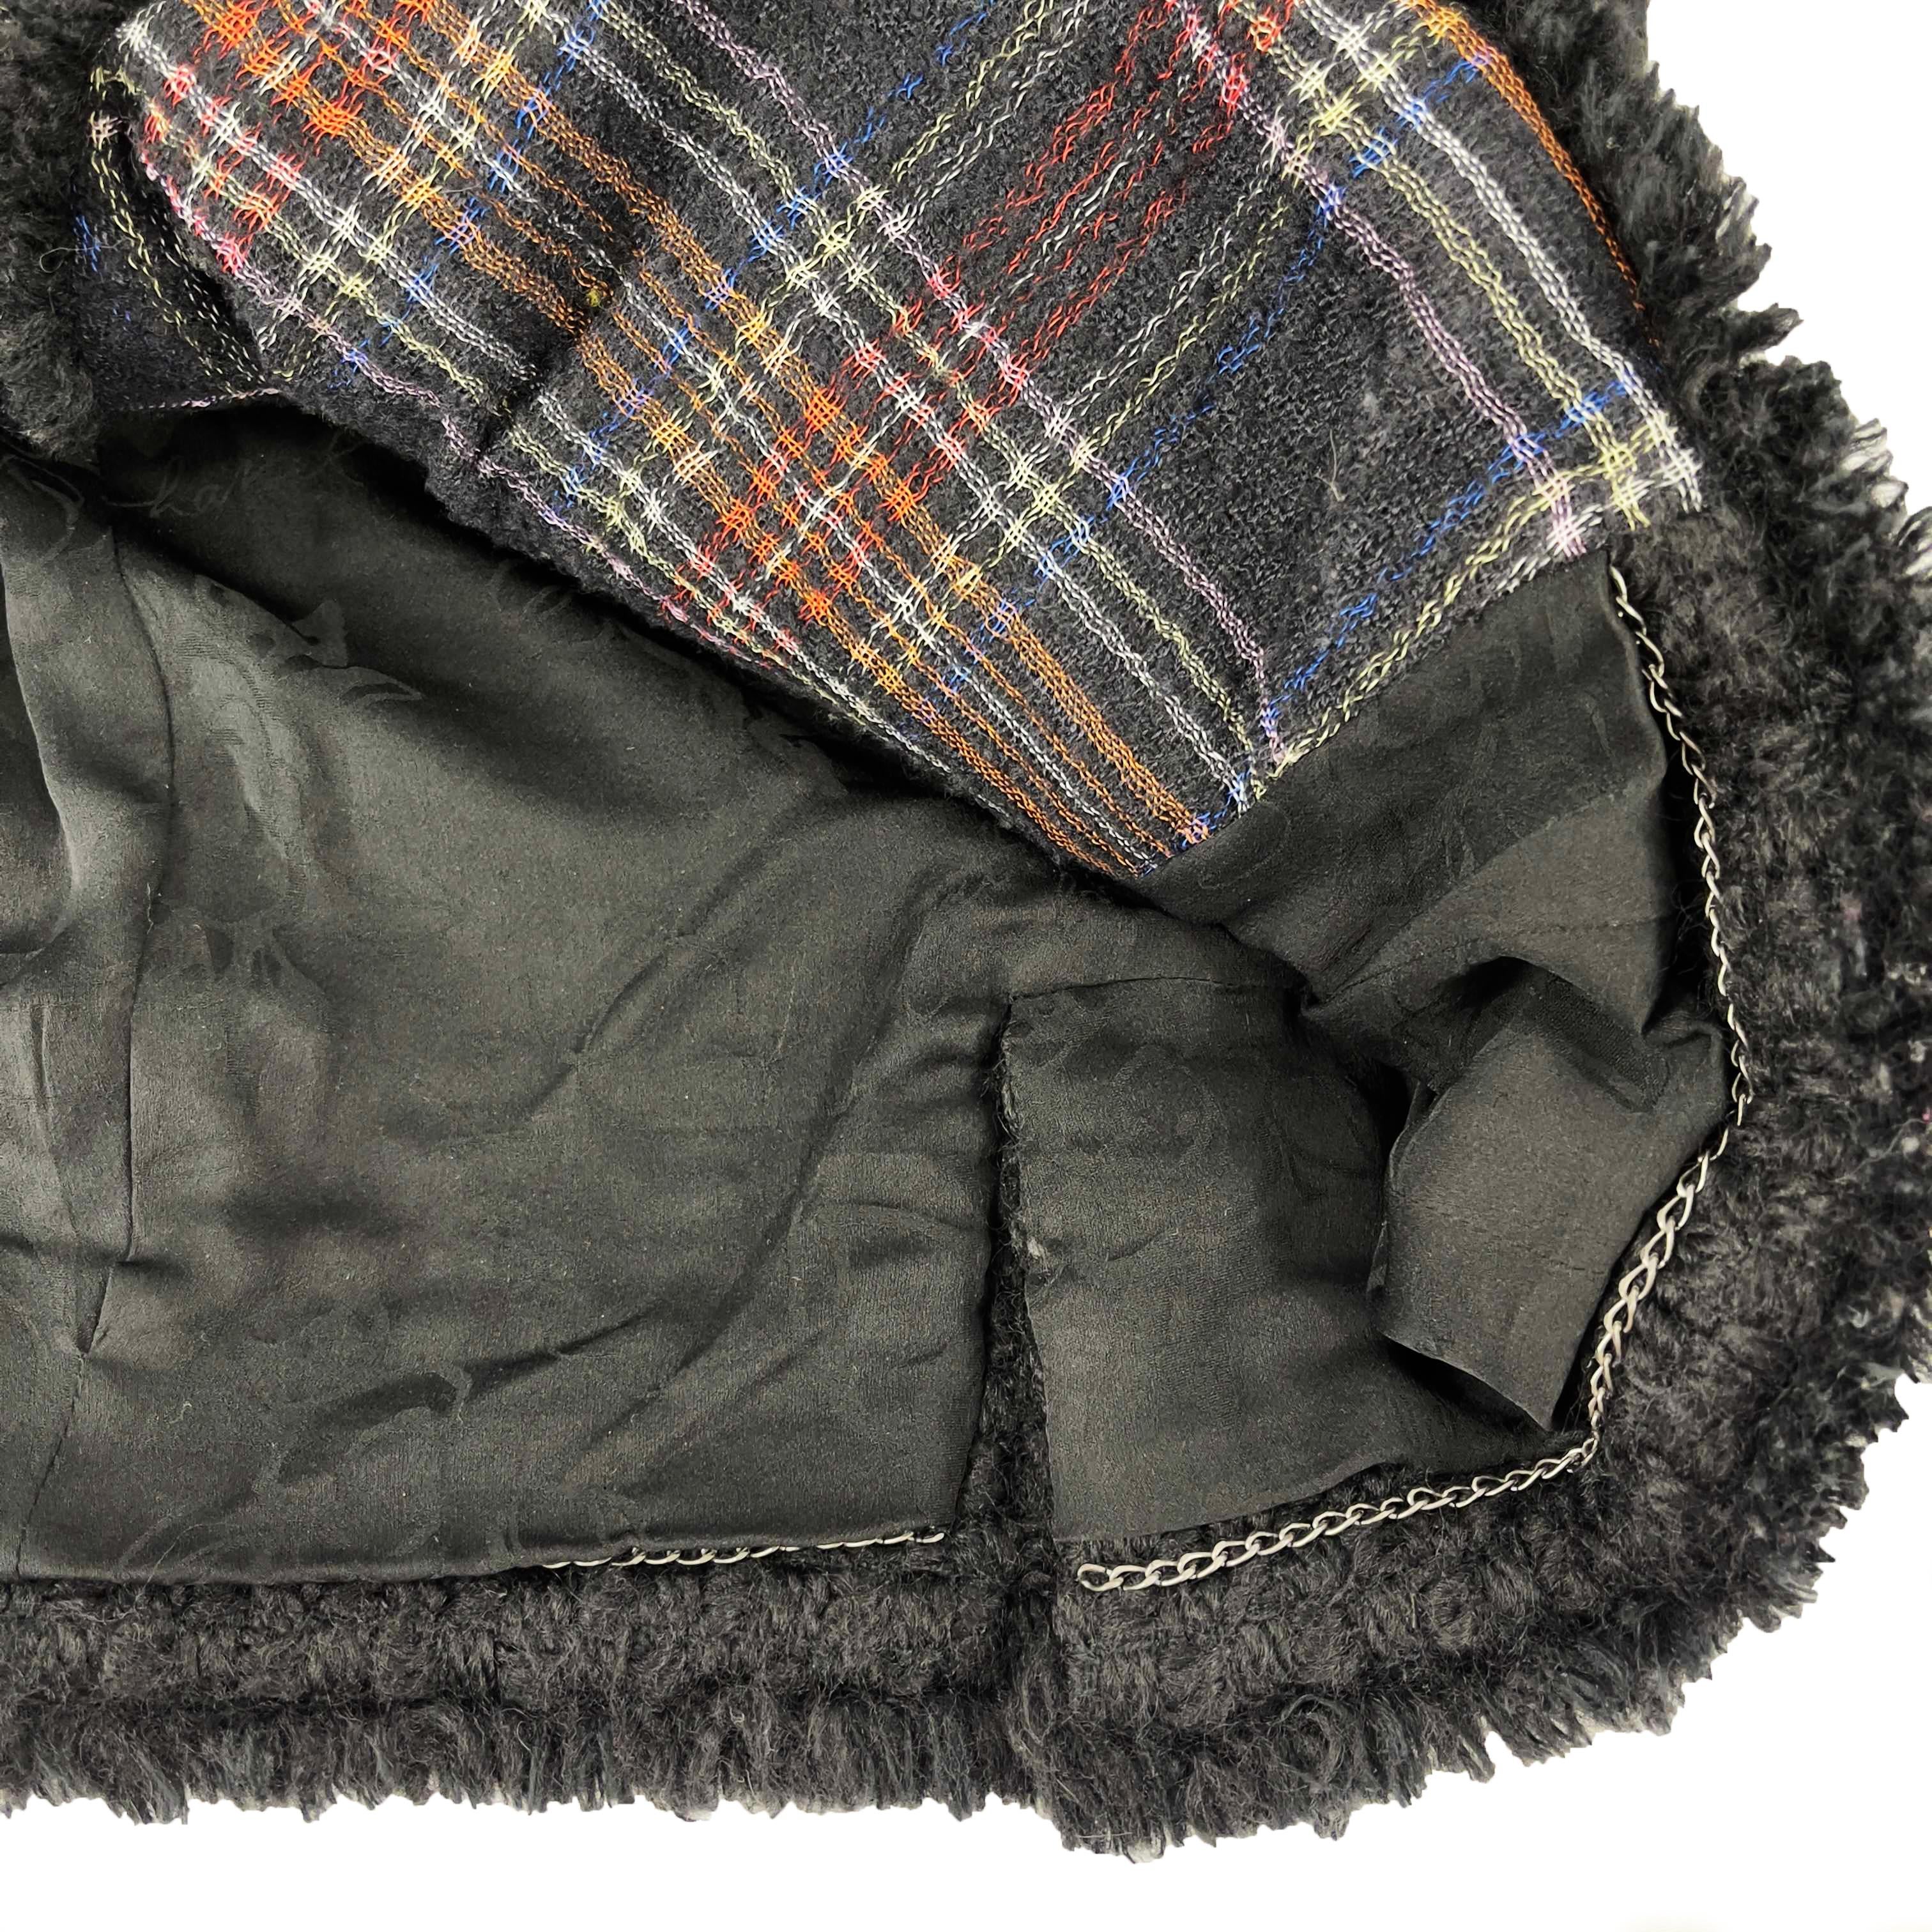 CHANEL -13A Paris-Edinburgh Black Tweed Plaid Jacket - Gripoix Buttons - 36 US 6 5